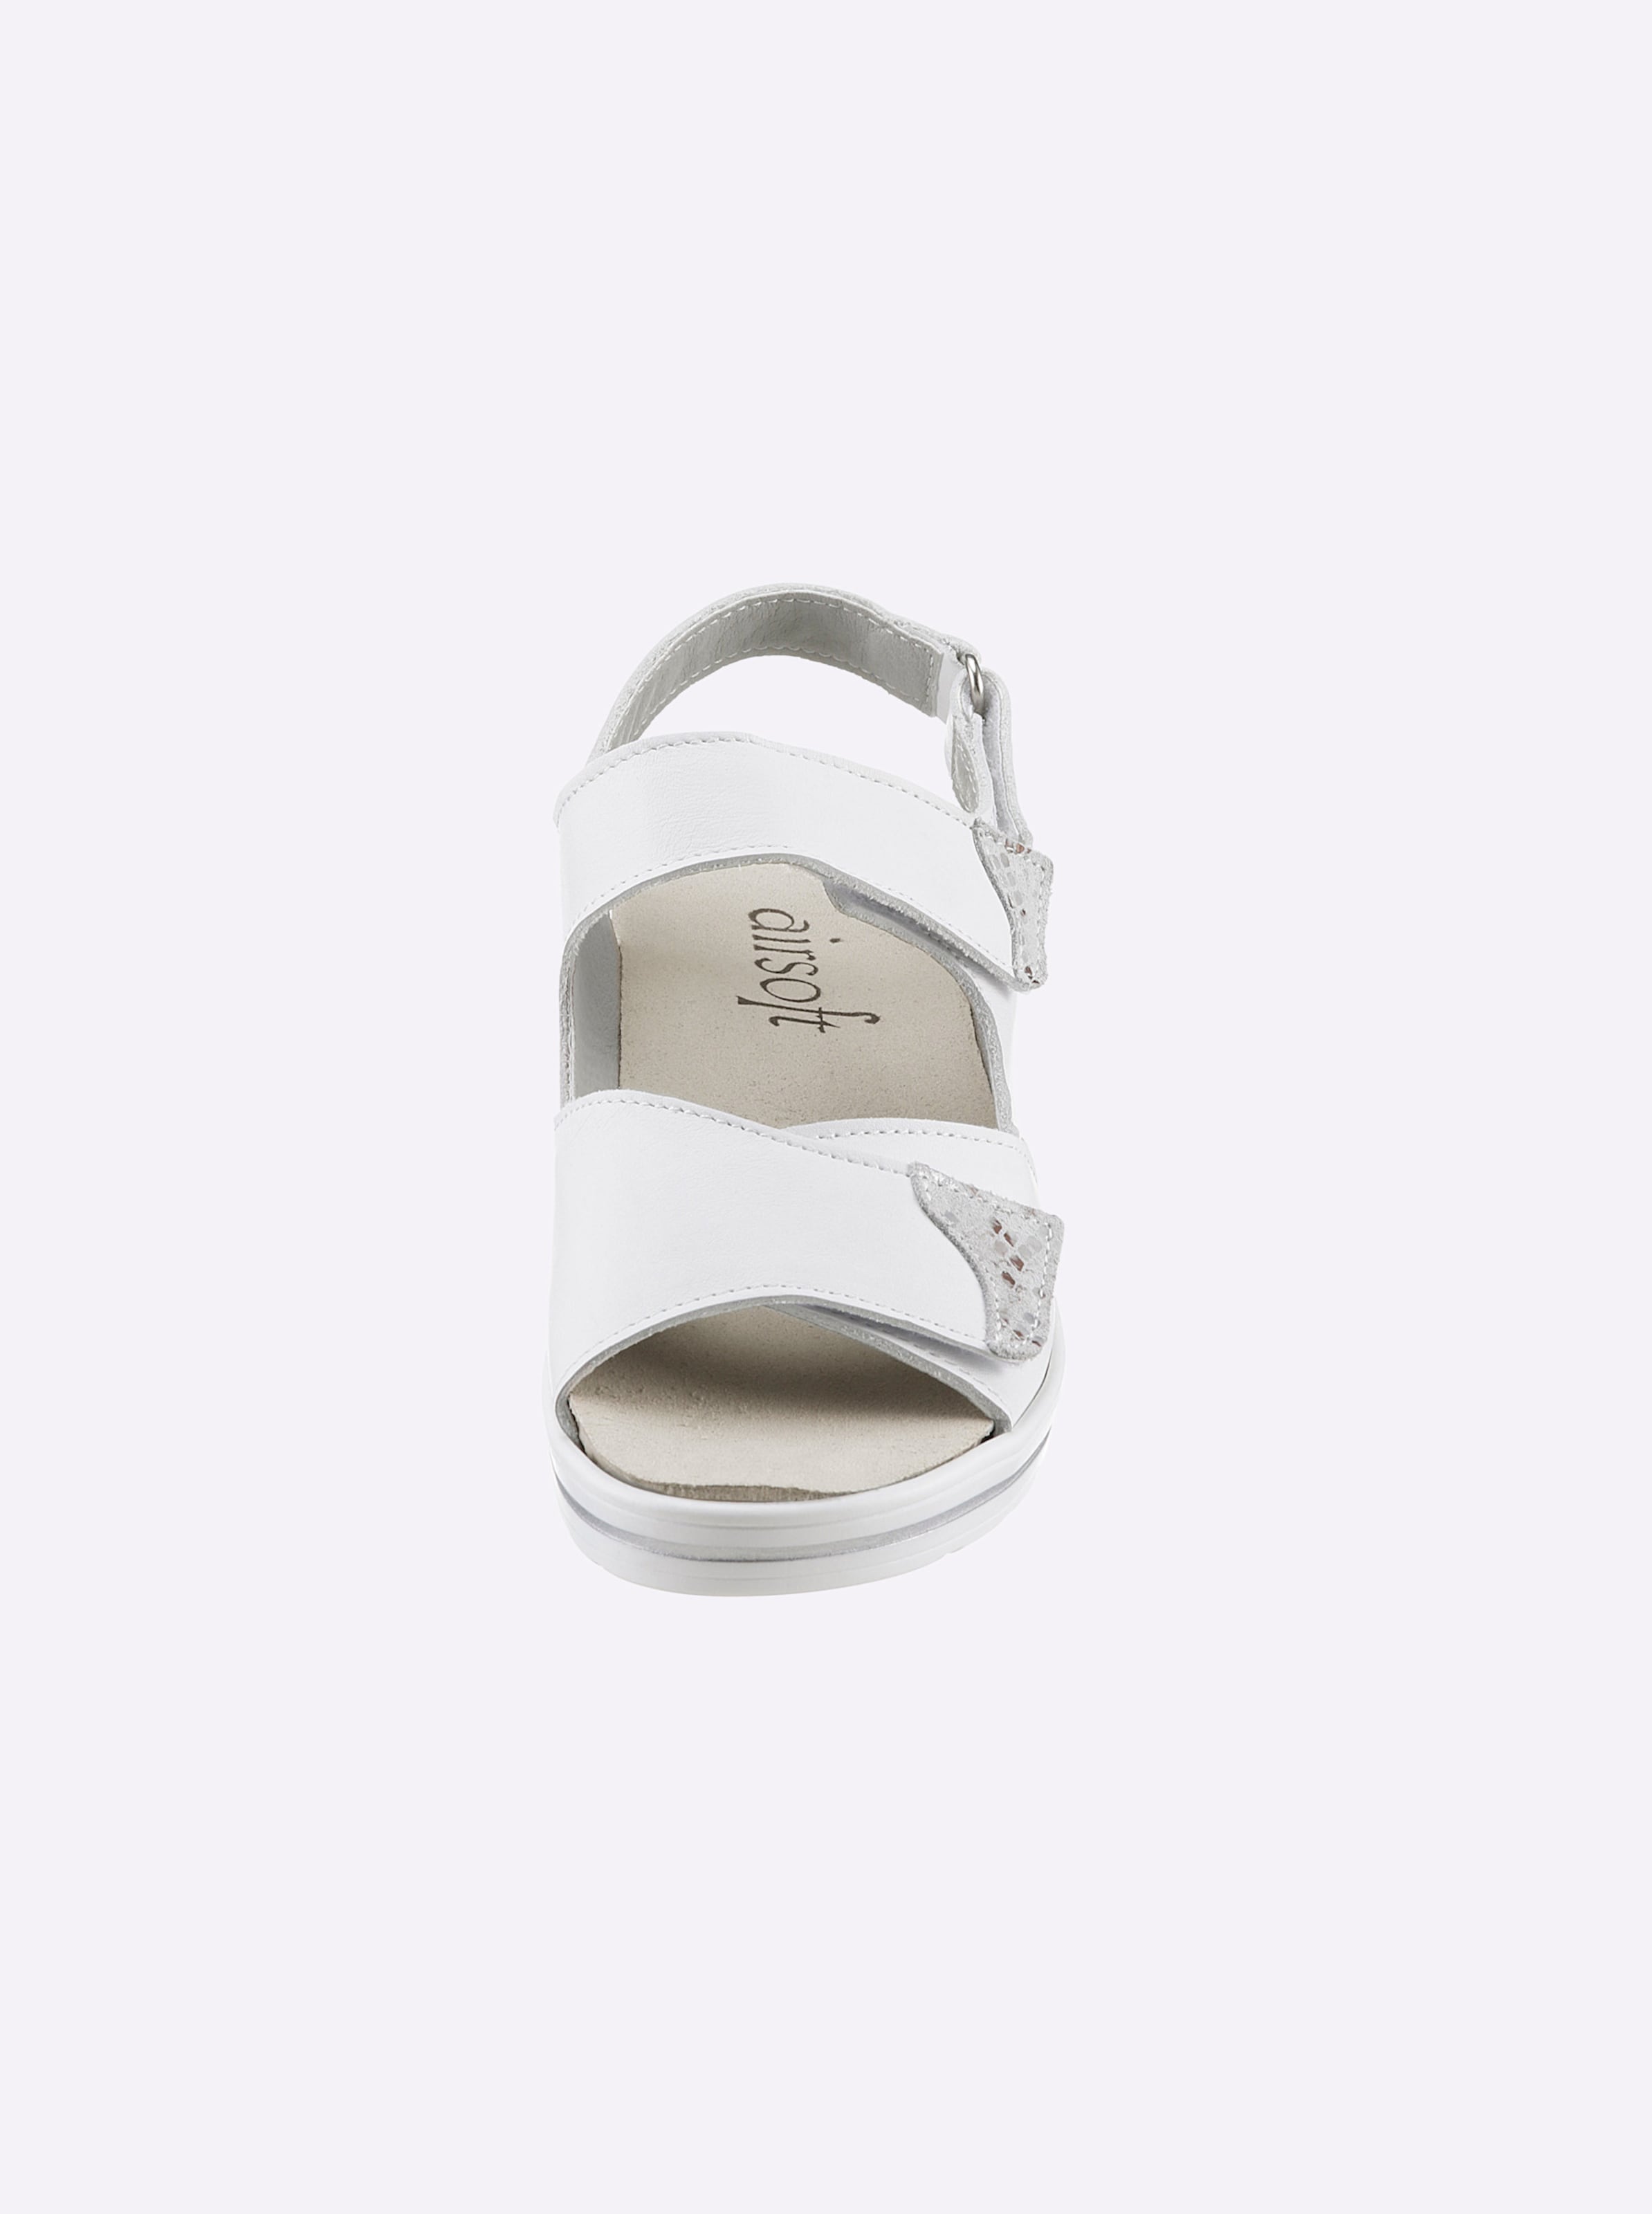 Farbe günstig Kaufen-Sandalette in weiß von airsoft comfort+. Sandalette in weiß von airsoft comfort+ <![CDATA[Wir stehen auf Komfort und eine tolle Optik – wie die Sandalette von airsoft comfort+ beweist. Farbe Weiß aus Glattleder, Farbe Marine aus Nubuk- und La